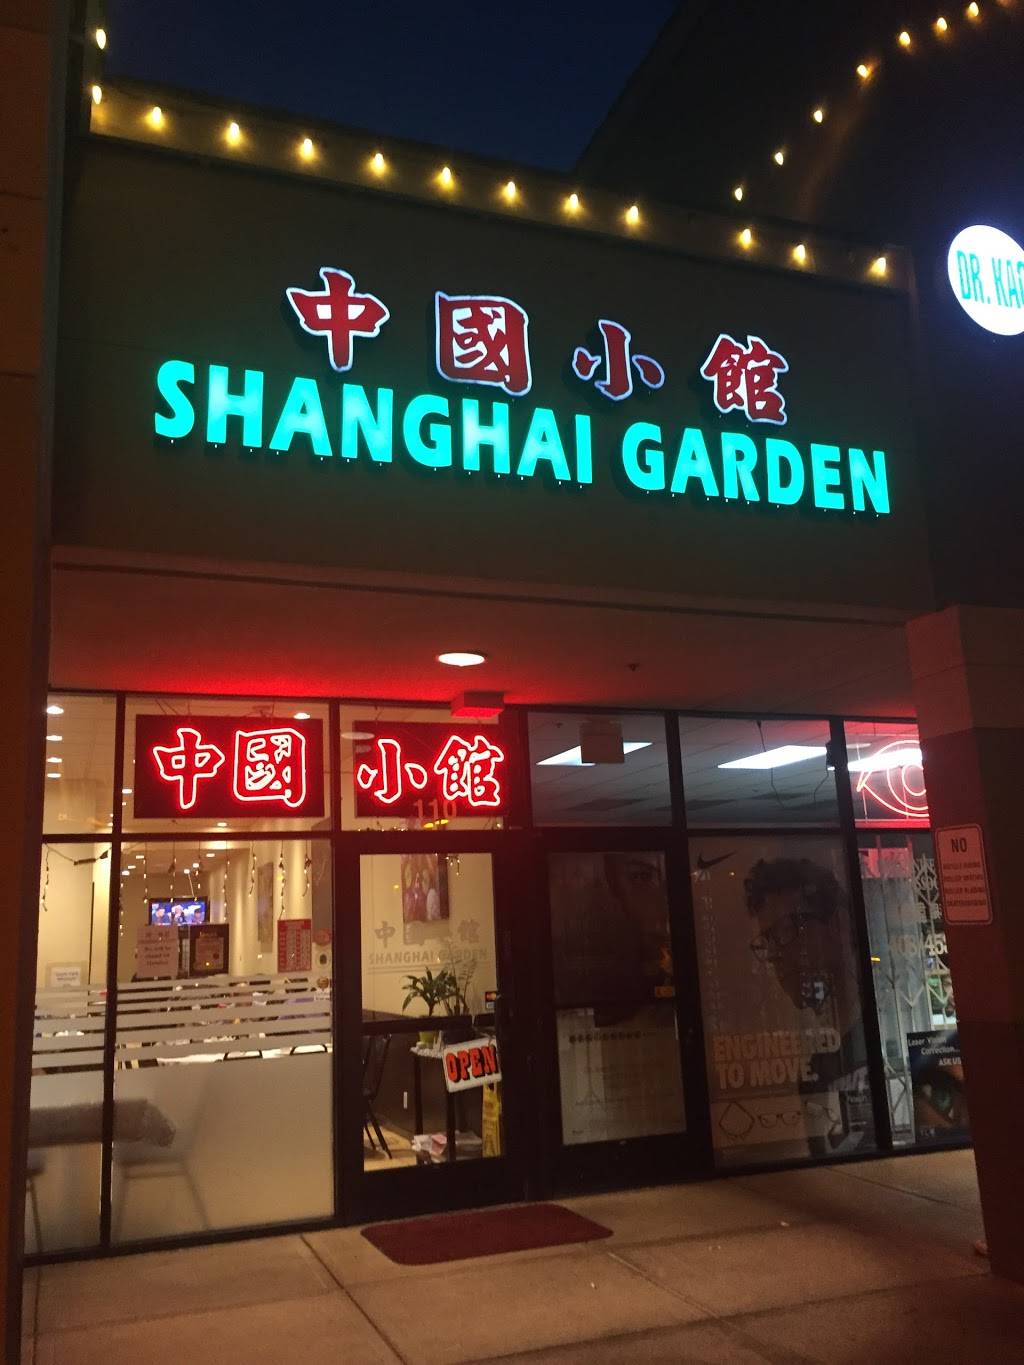 Shanghai Garden 中国小馆 Restaurant 1701 Lundy Ave San Jose